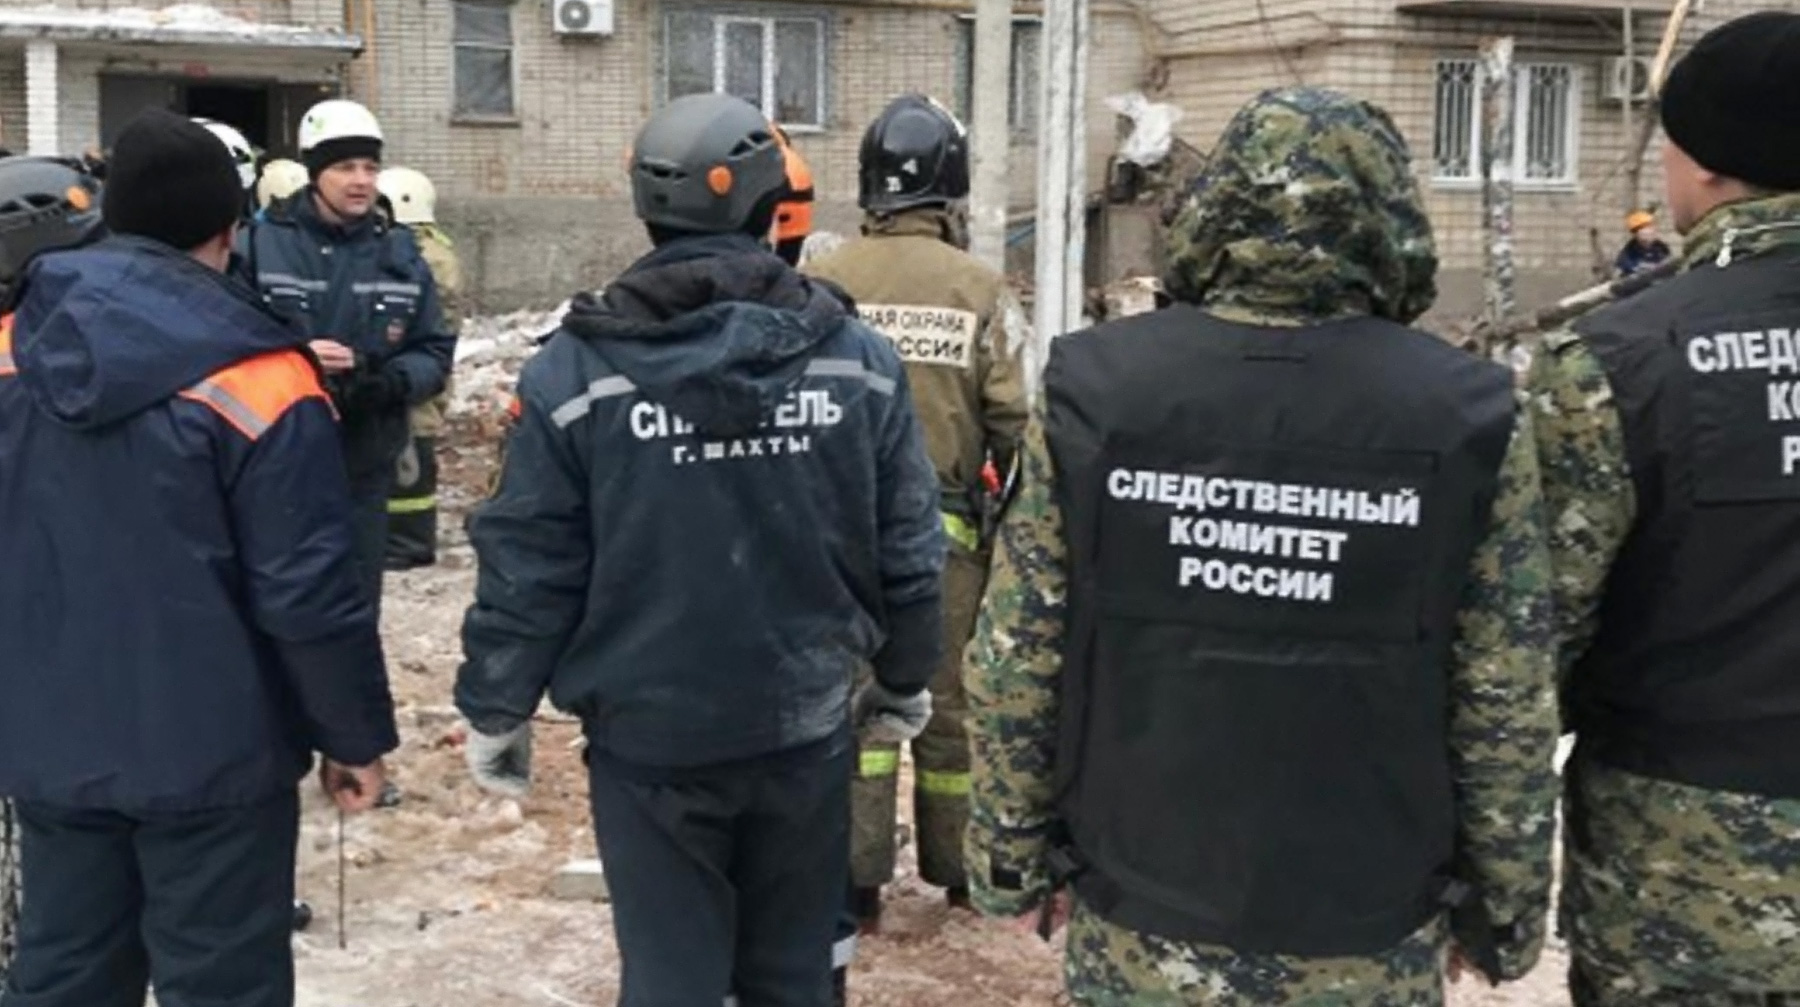 Поисково-спасательная операция на месте трагедии завершена, сообщили в МЧС России Фото: © sledcom.ru